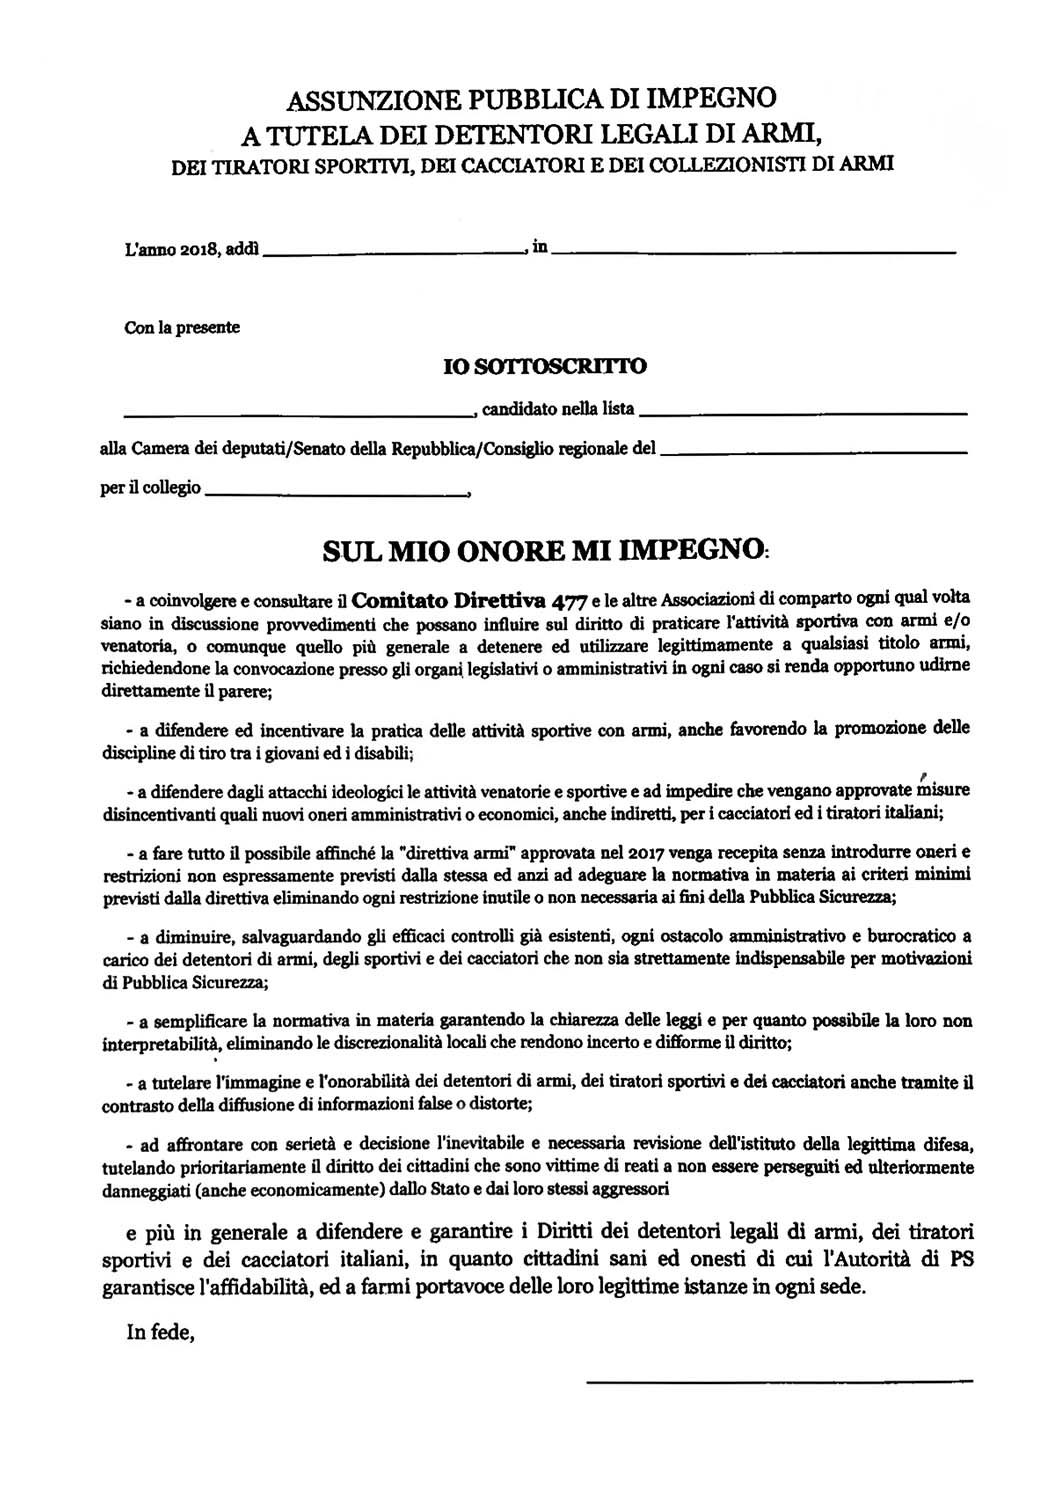 Copia del documento firmato dall'On. Matteo Salvini a HIT Show 2018